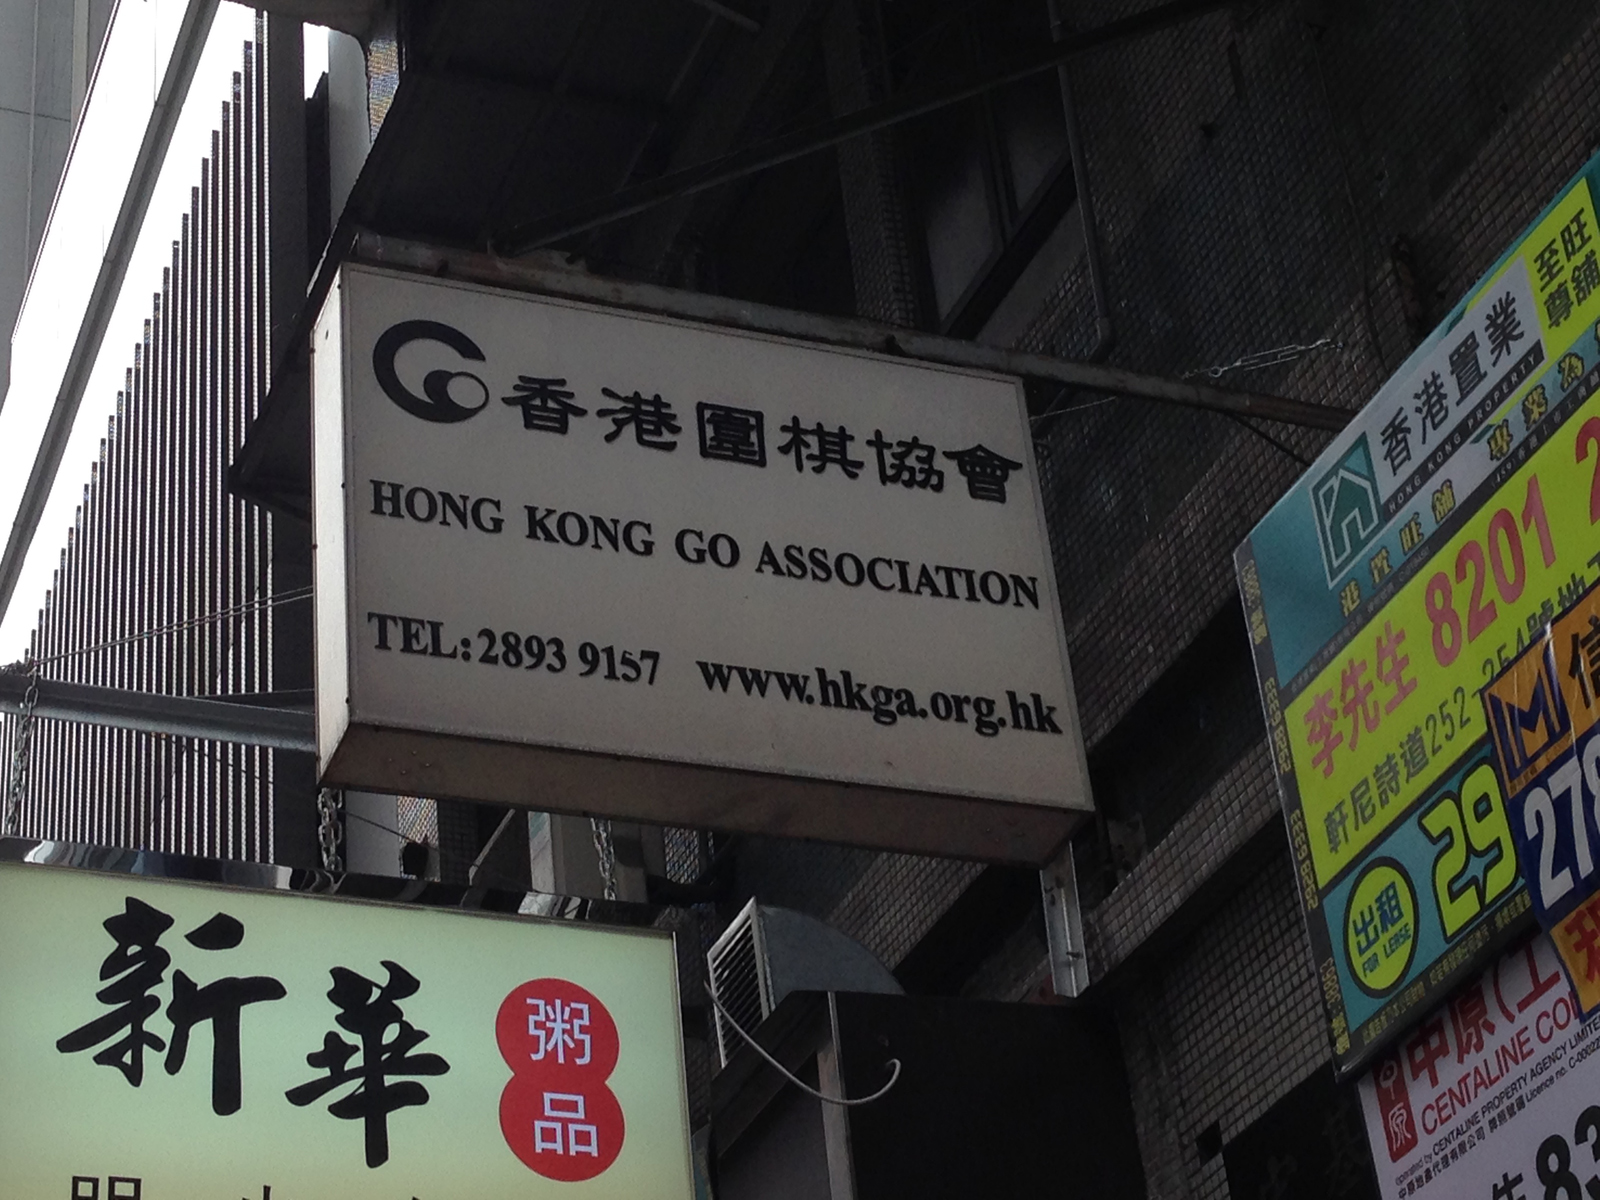 Woohoo! Here we are! The Hong Kong Go Association at 252 Hennessy Road; Wan Chai; Hong Kong.